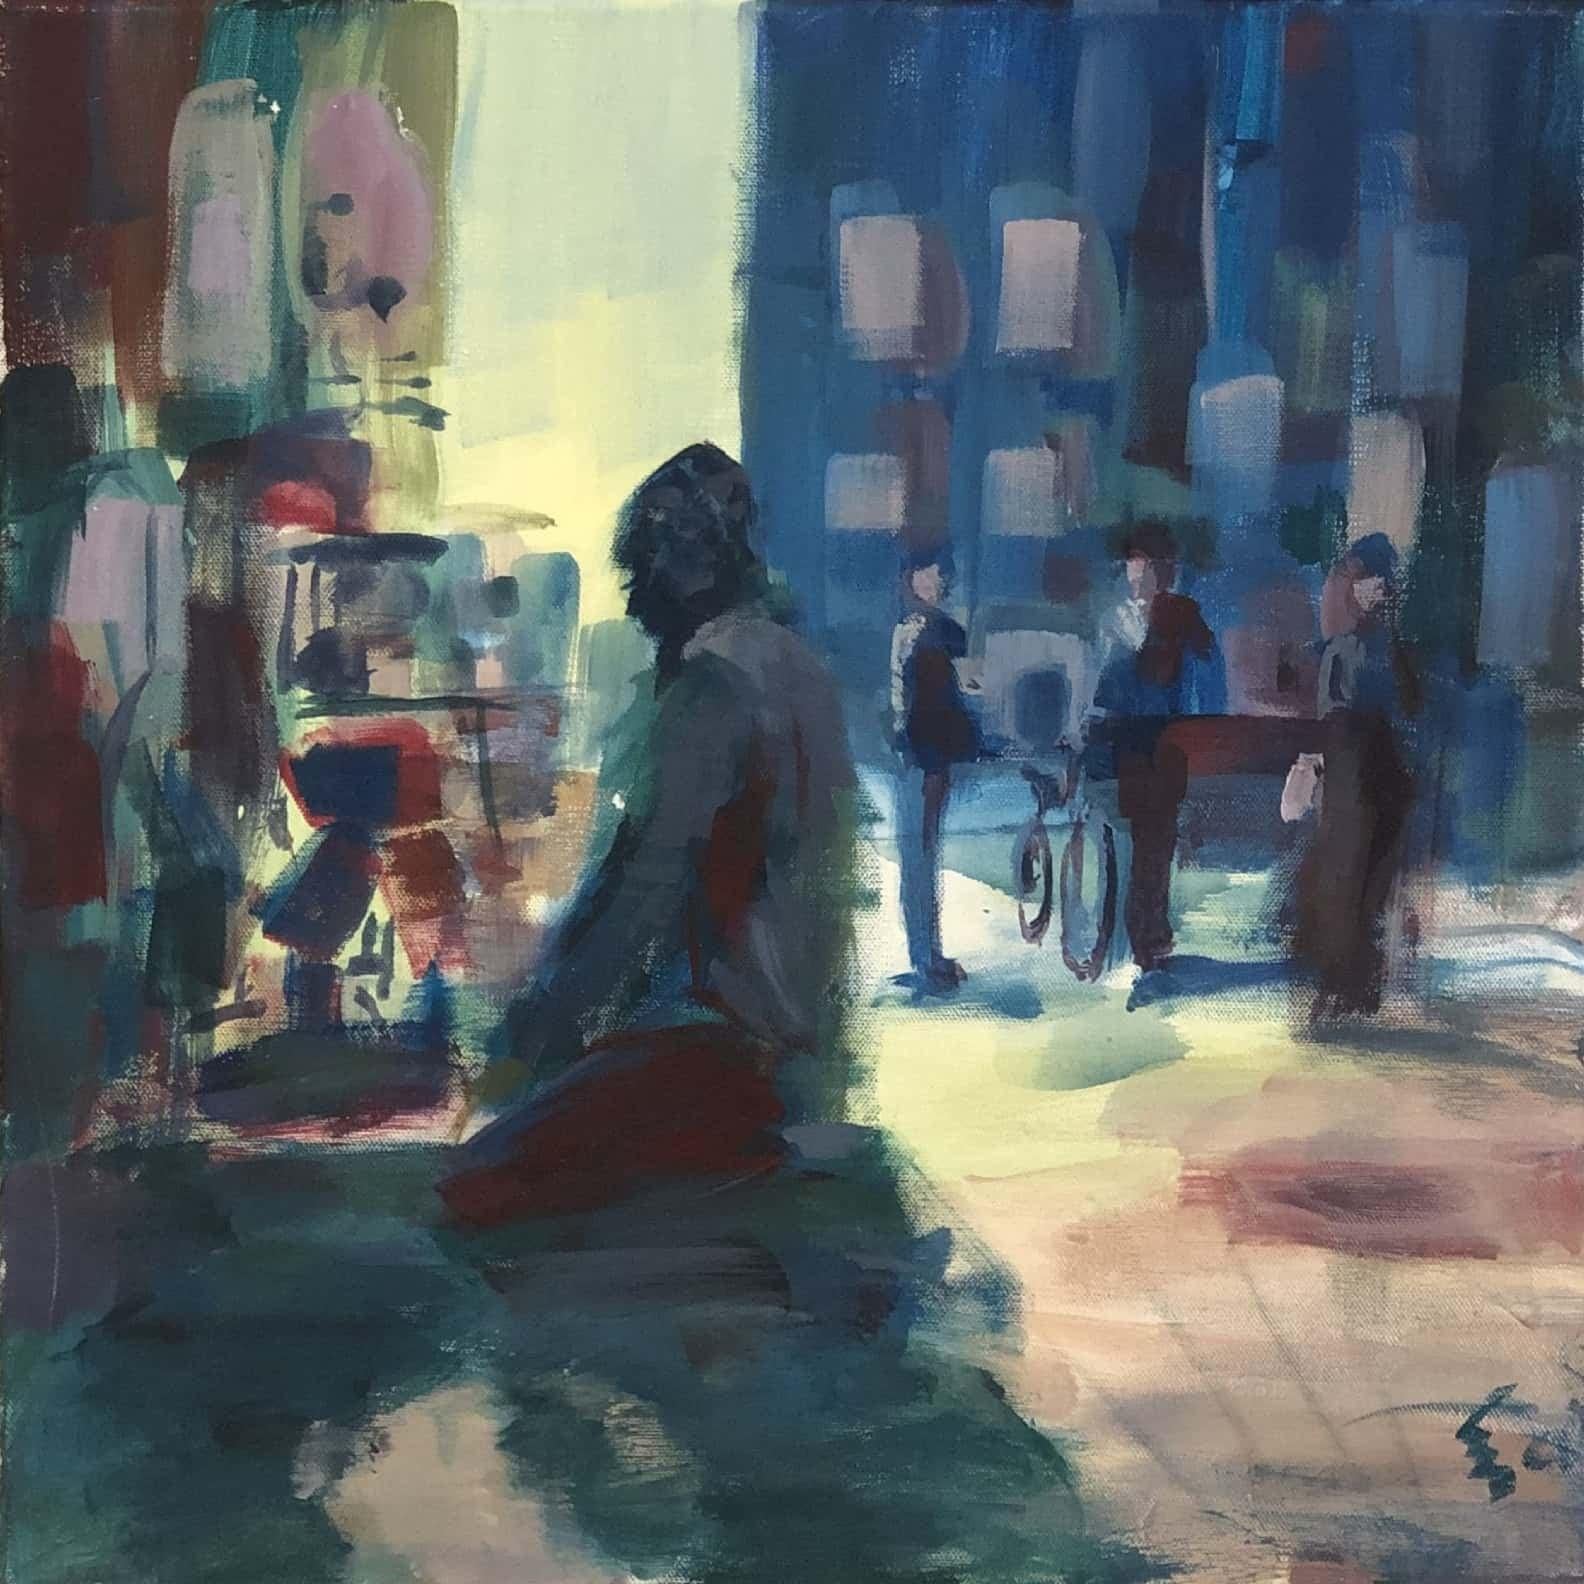 "Untitled 97" Peinture abstraite 16" x 16" pouces par Ahmed Dafrawy 

Le parcours académique de Dafrawy dans le domaine des beaux-arts a commencé en 2014 lorsqu'il a reçu le certificat d'achèvement du cours de dessin de la Faculté d'art et